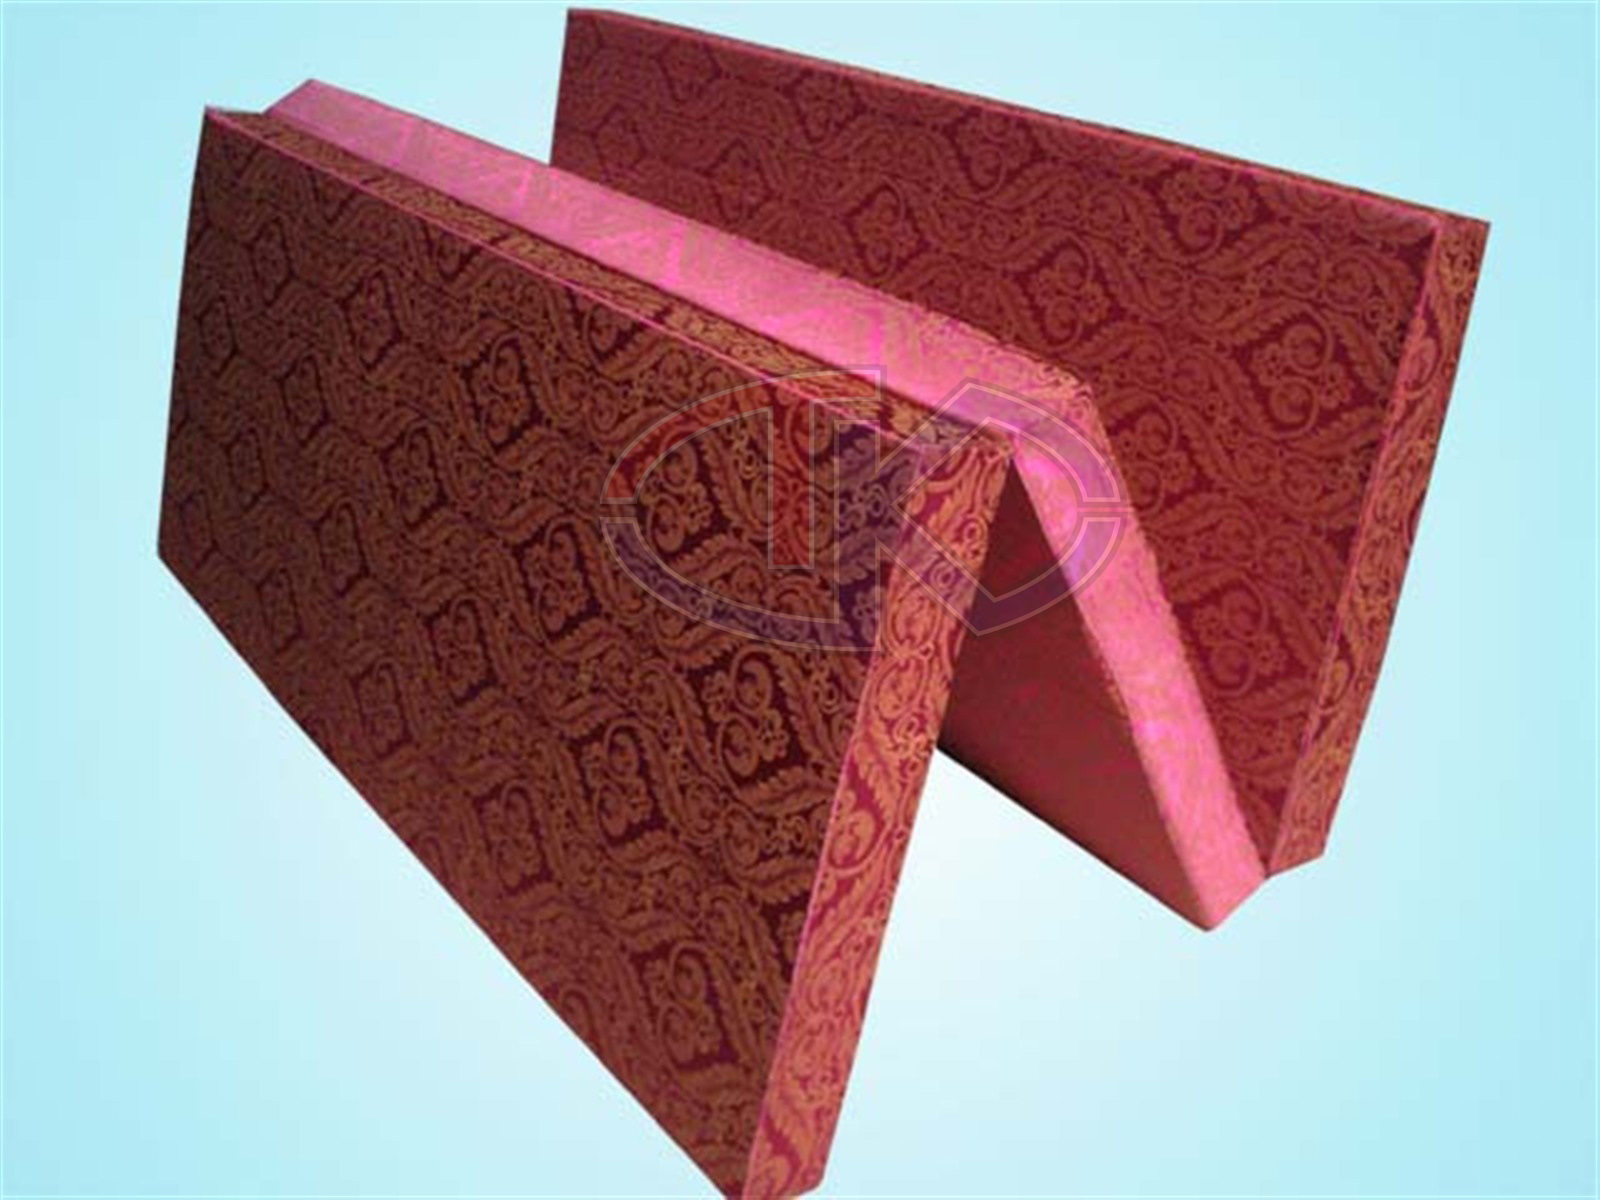 foam mattress manufacturers usa